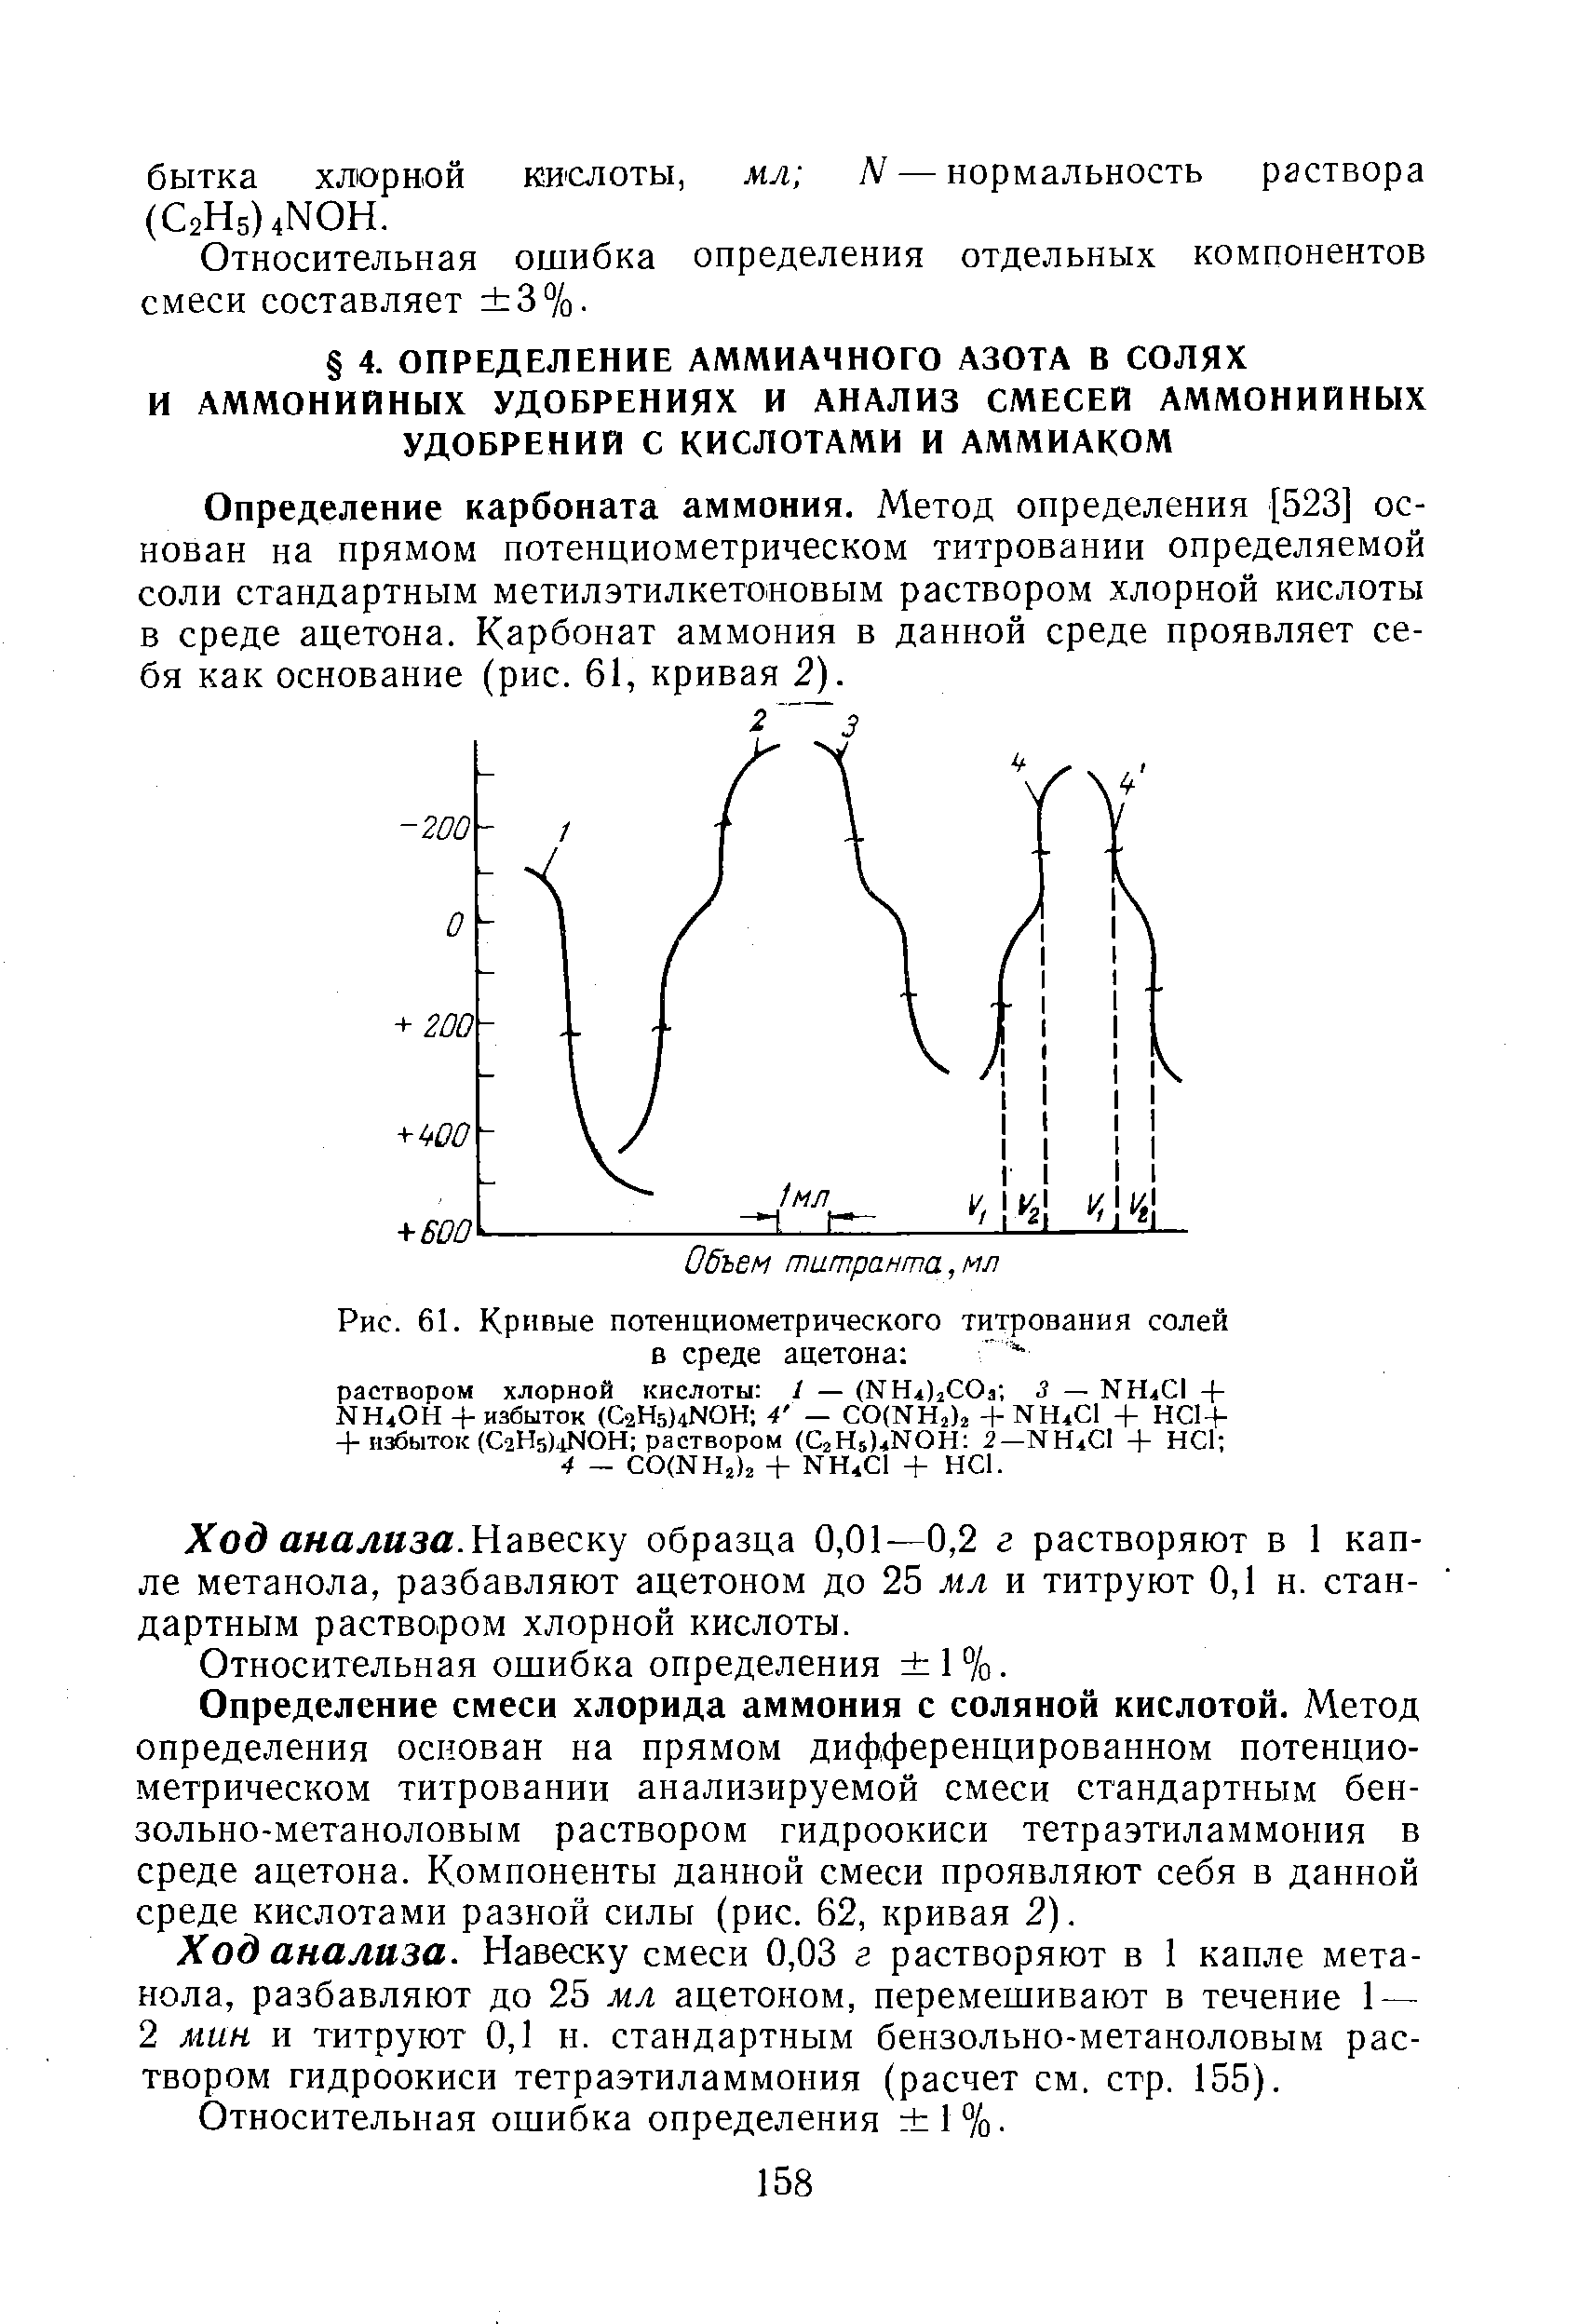 Определение карбоната аммония. Метод определения [523] основан на прямом потенциометрическом титровании определяемой соли стандартным метилэтилкетоновым раствором хлорной кислоты в среде ацетона. Карбонат аммония в данной среде проявляет себя как основание (рис. 61, кривая 2).